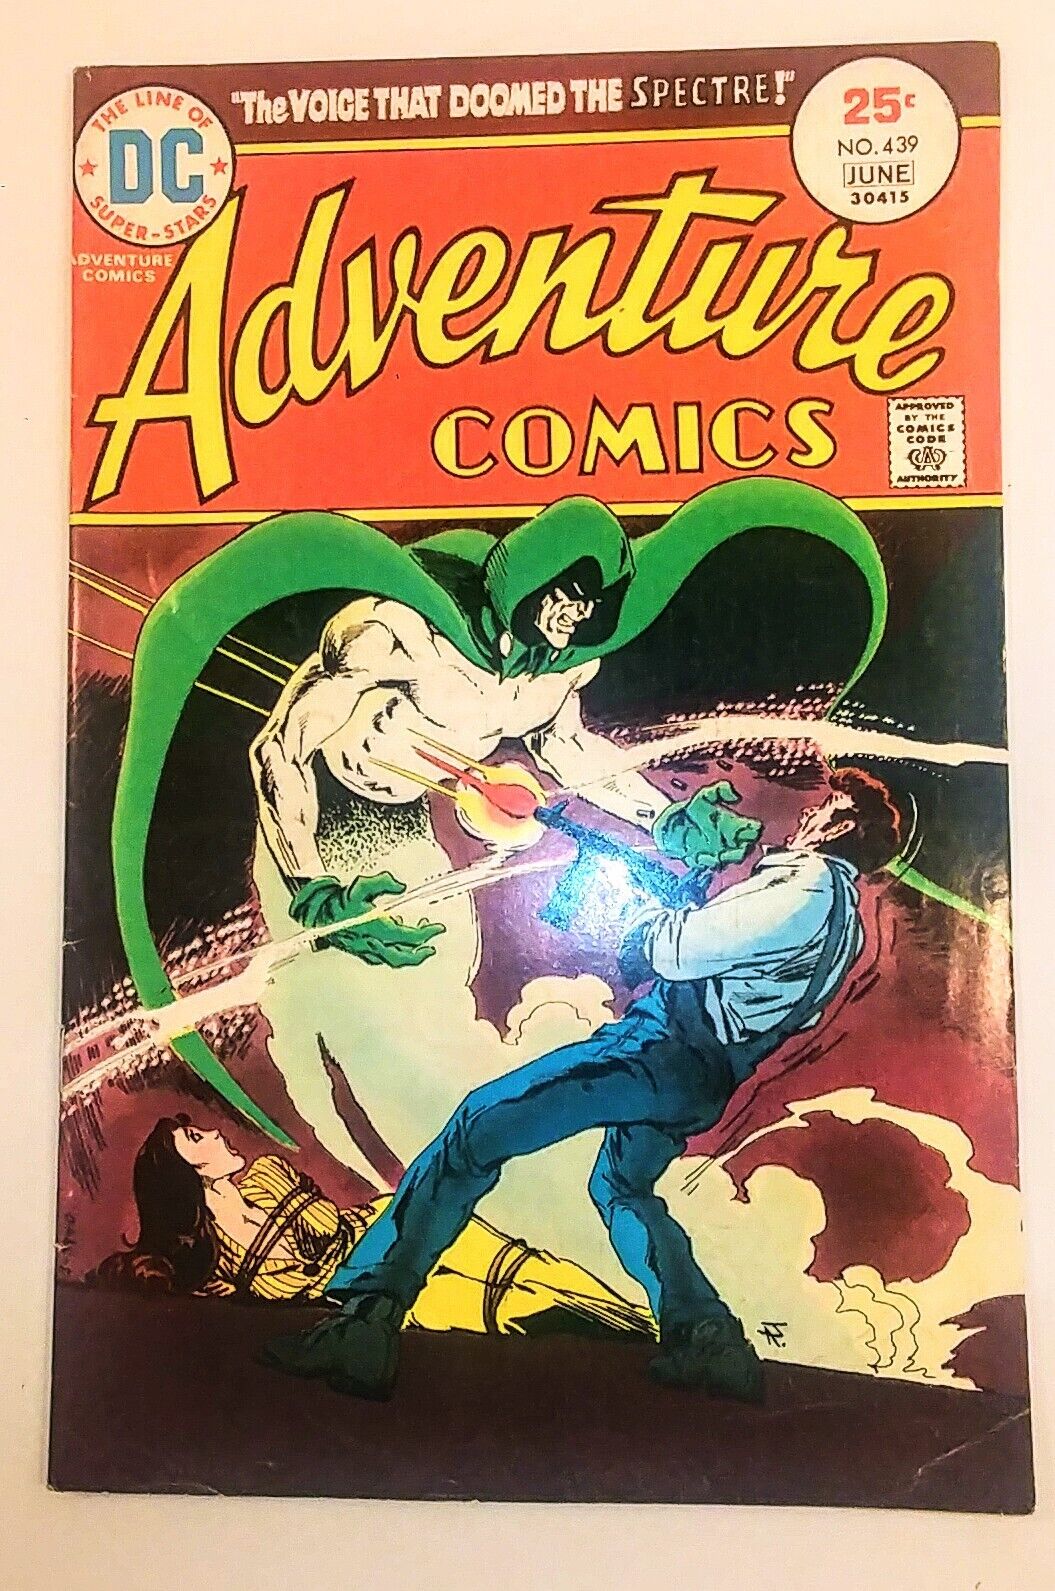 ADVENTURE COMICS NO. 439 FINE/FINE+ CONDITION 1975 DC COMICS